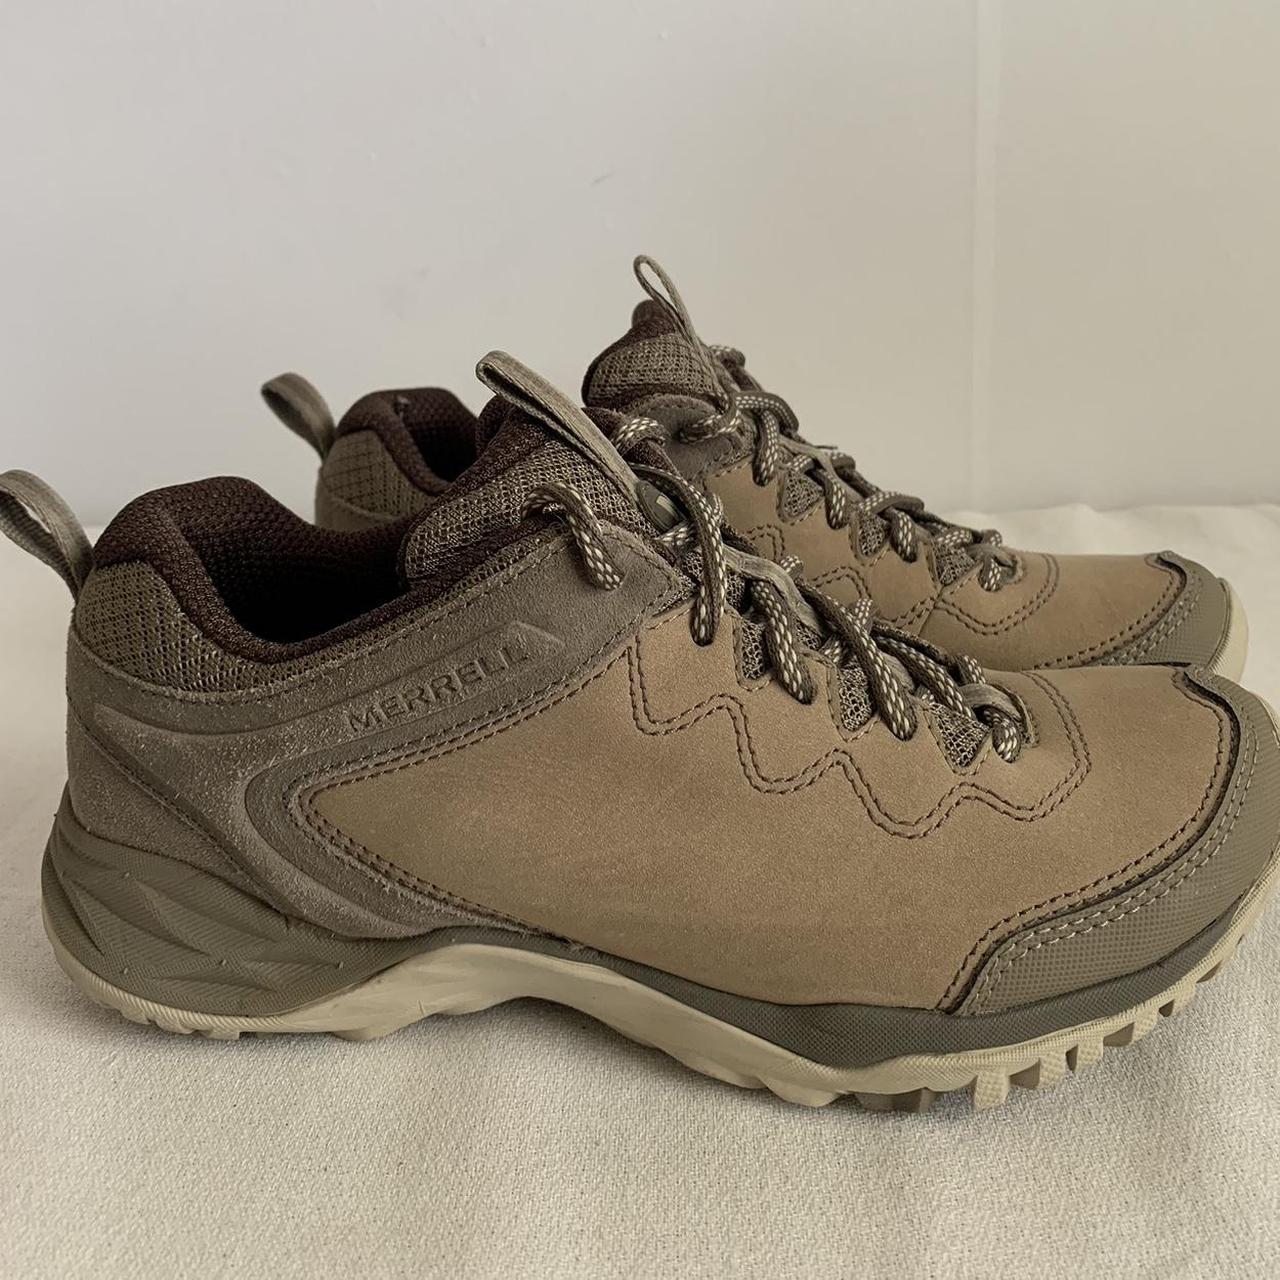 Merrell Shoes Hiking Sneakers Suede Grey J41238... - Depop